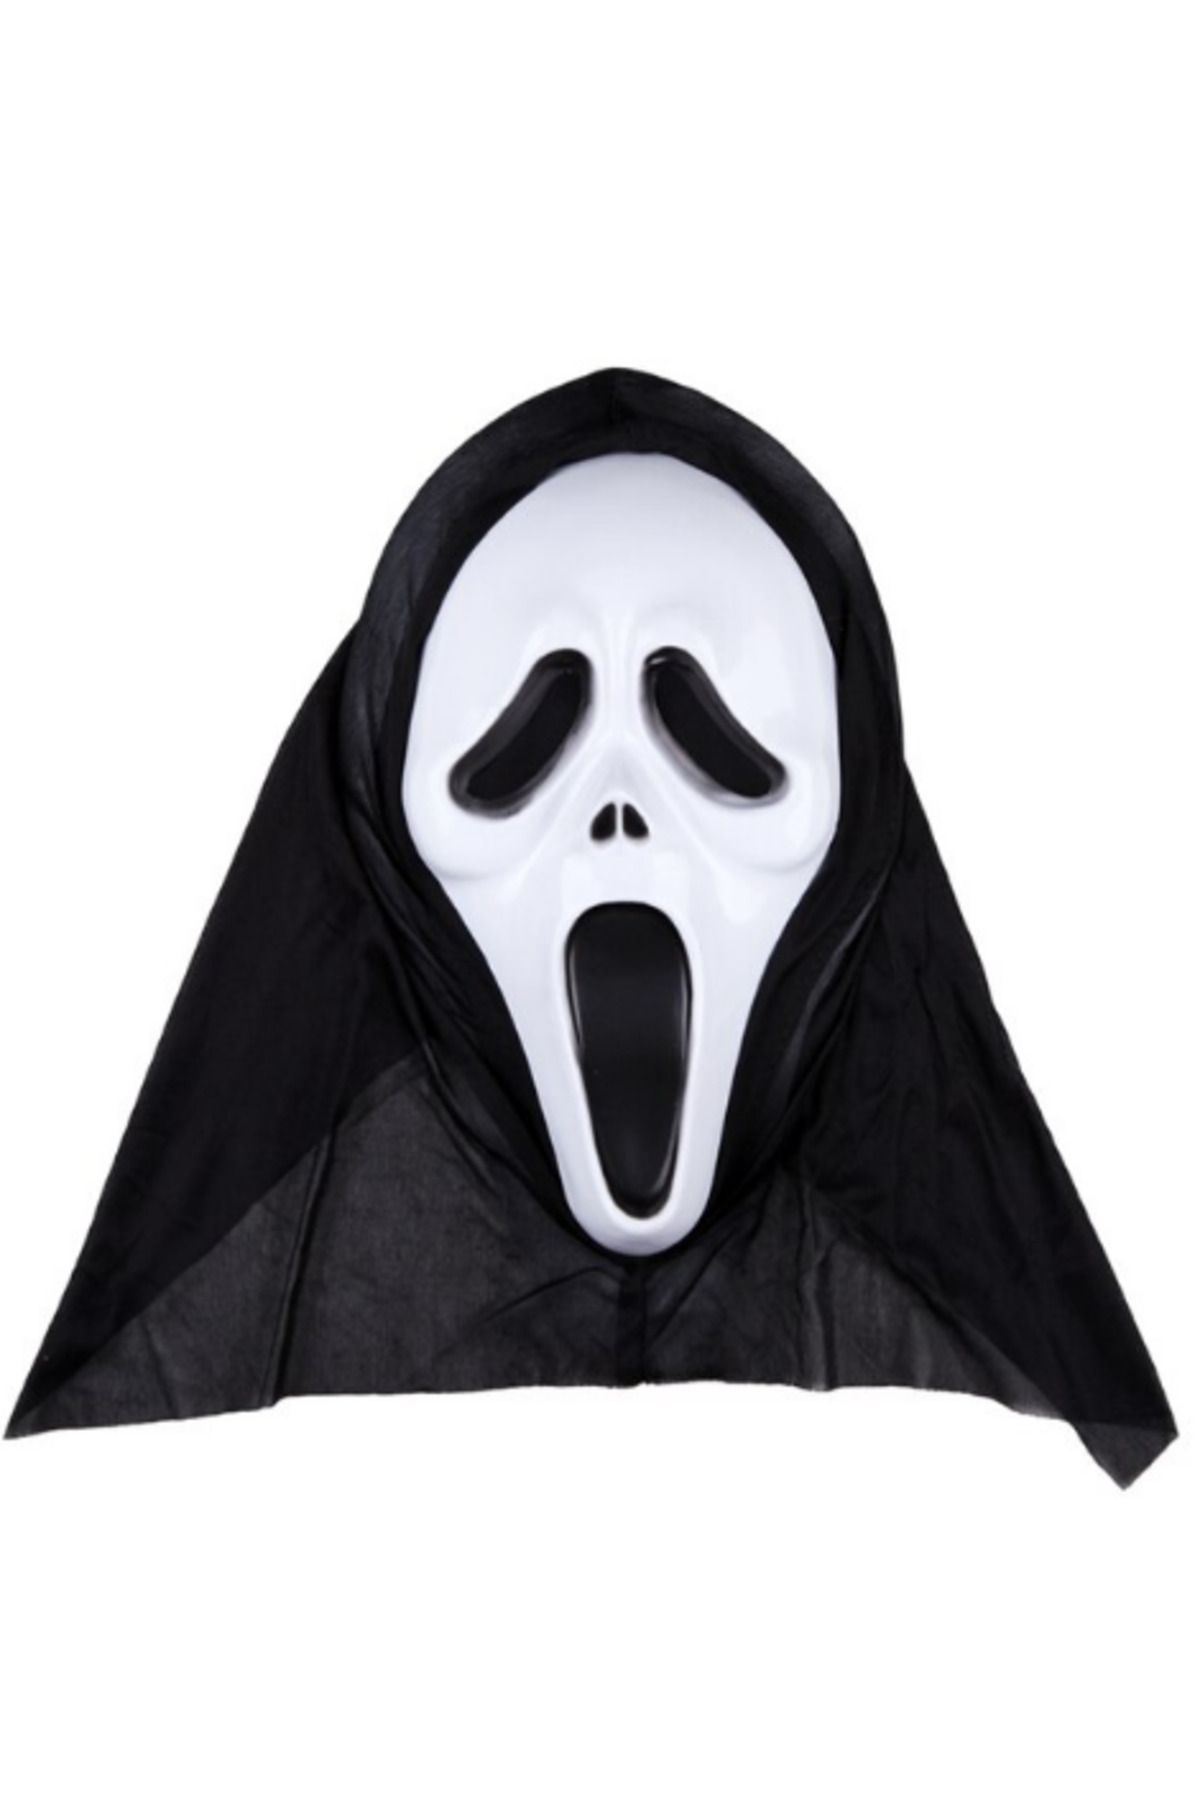 ERTEN Kapşonlu Çığlık Maskesi Scream Maskesi (4352)